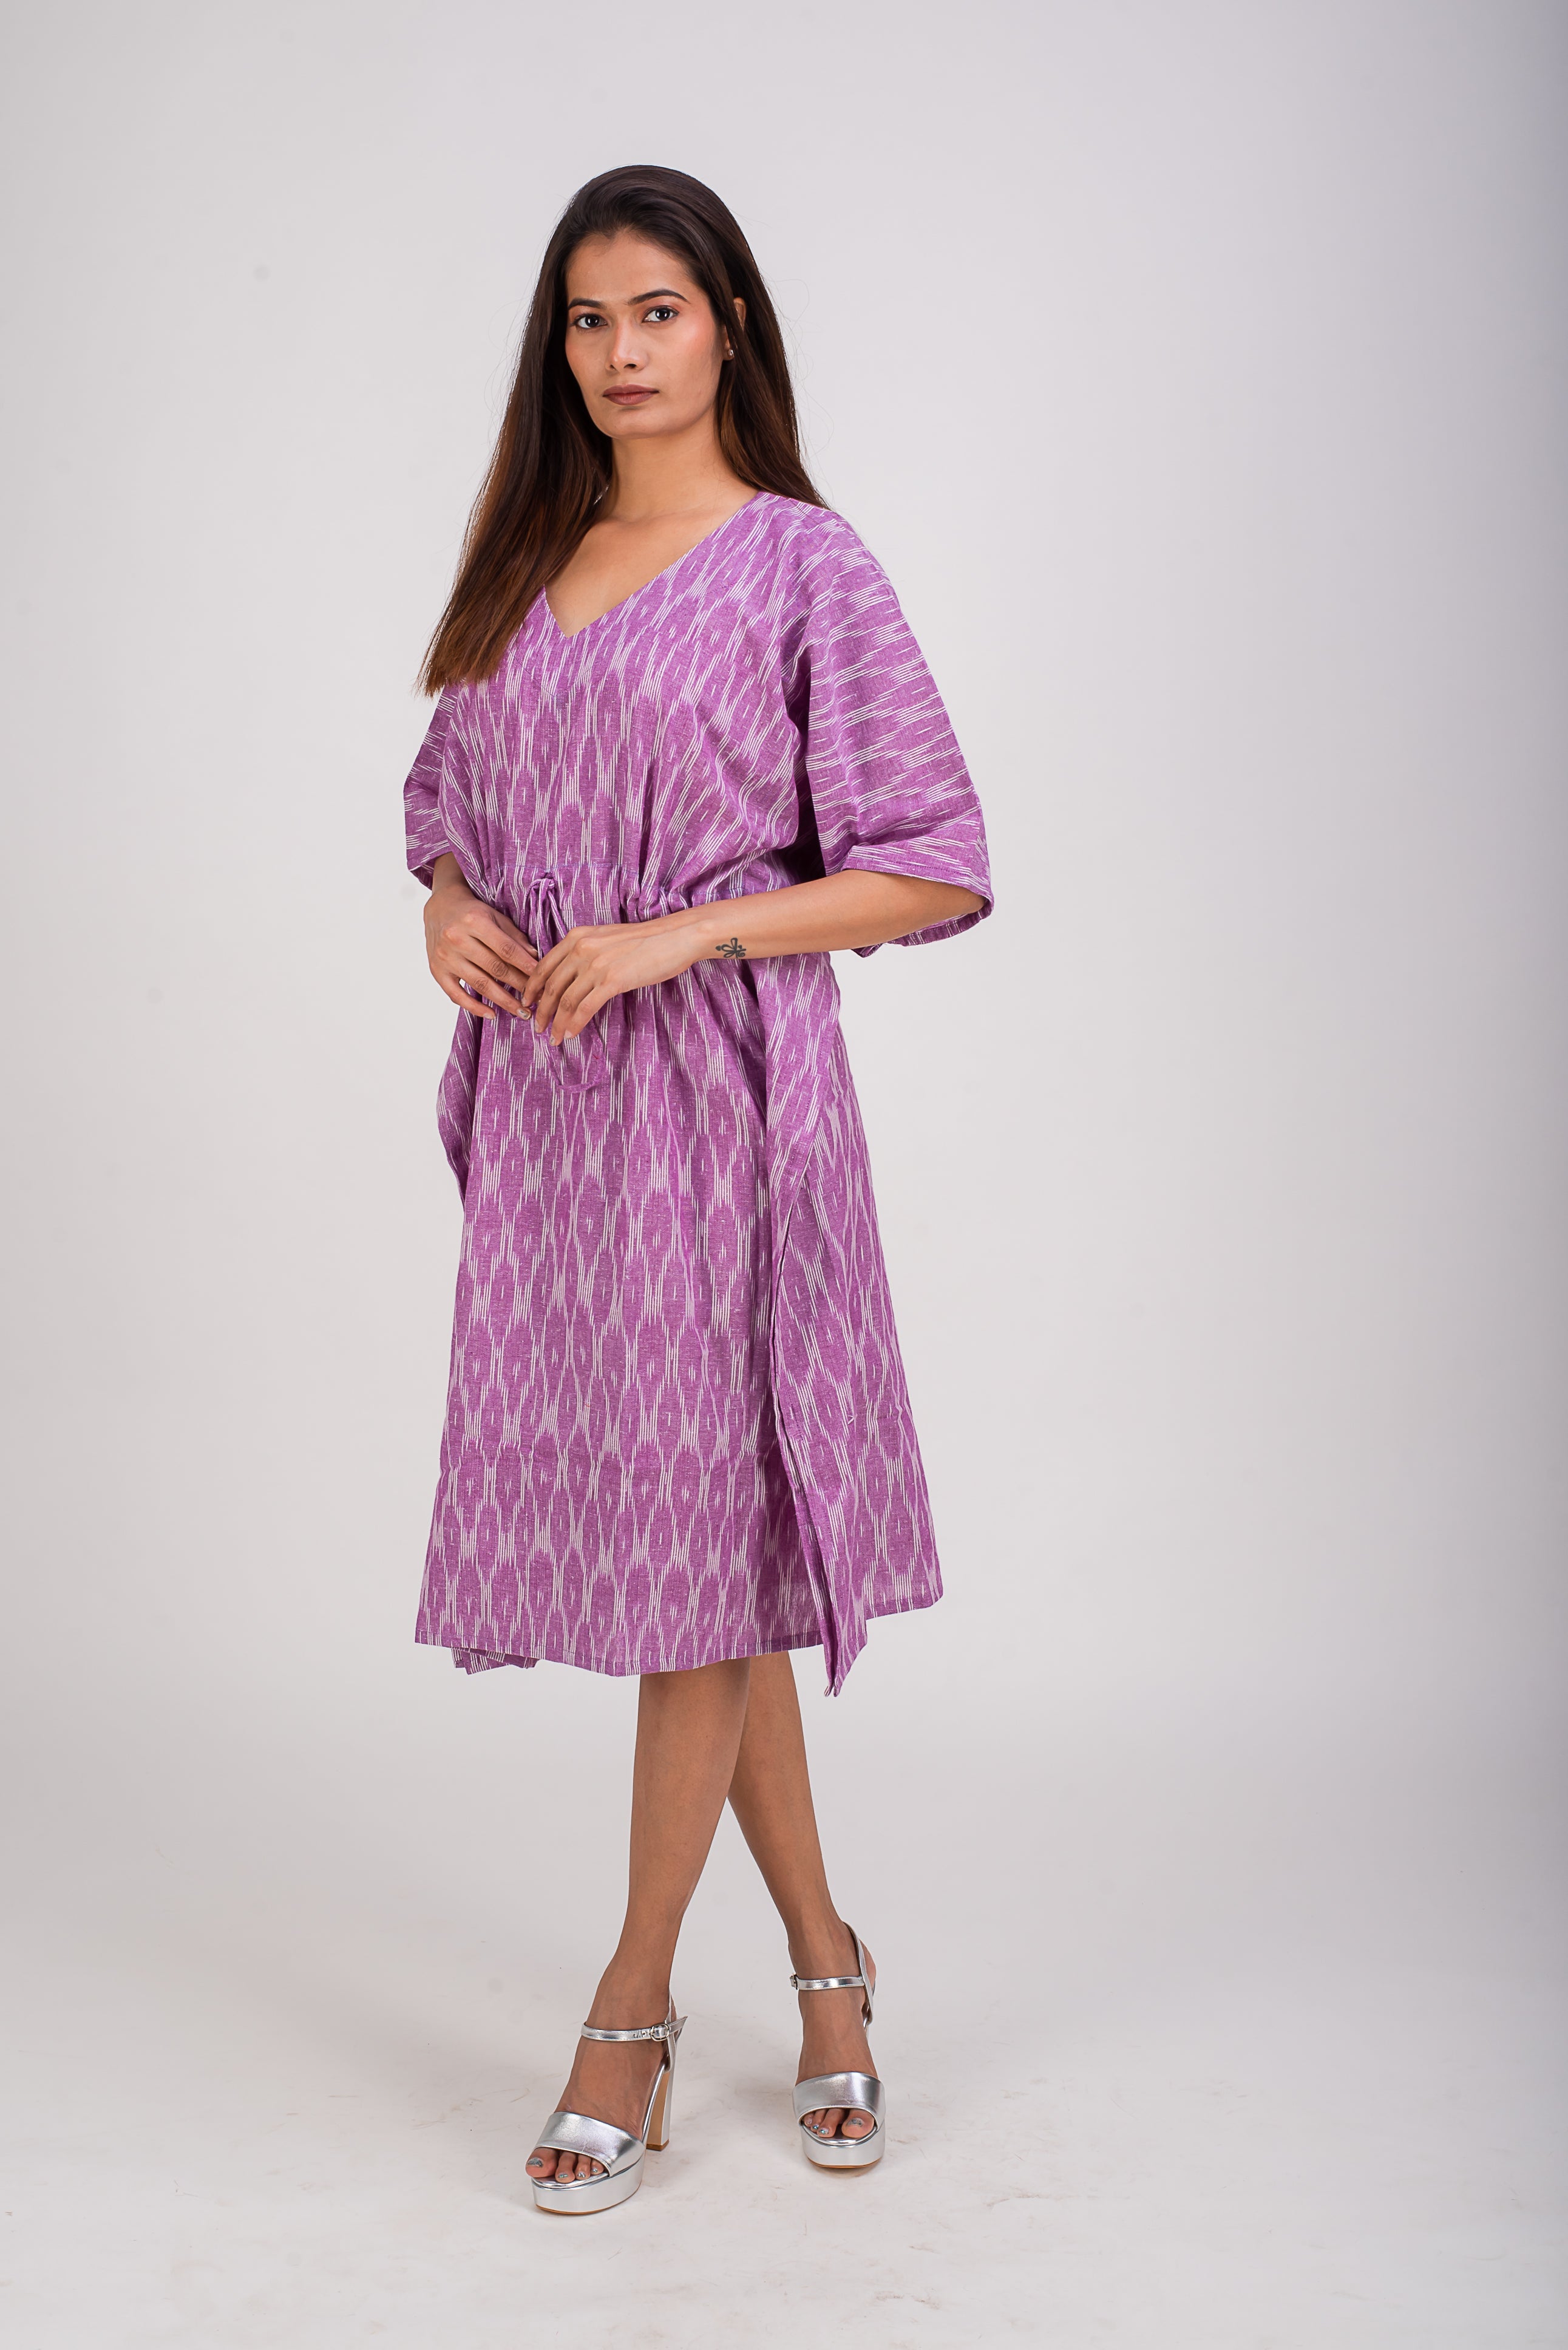 510-322 Whitelotus "Sony" Kaftan Knee Length Women's Dress